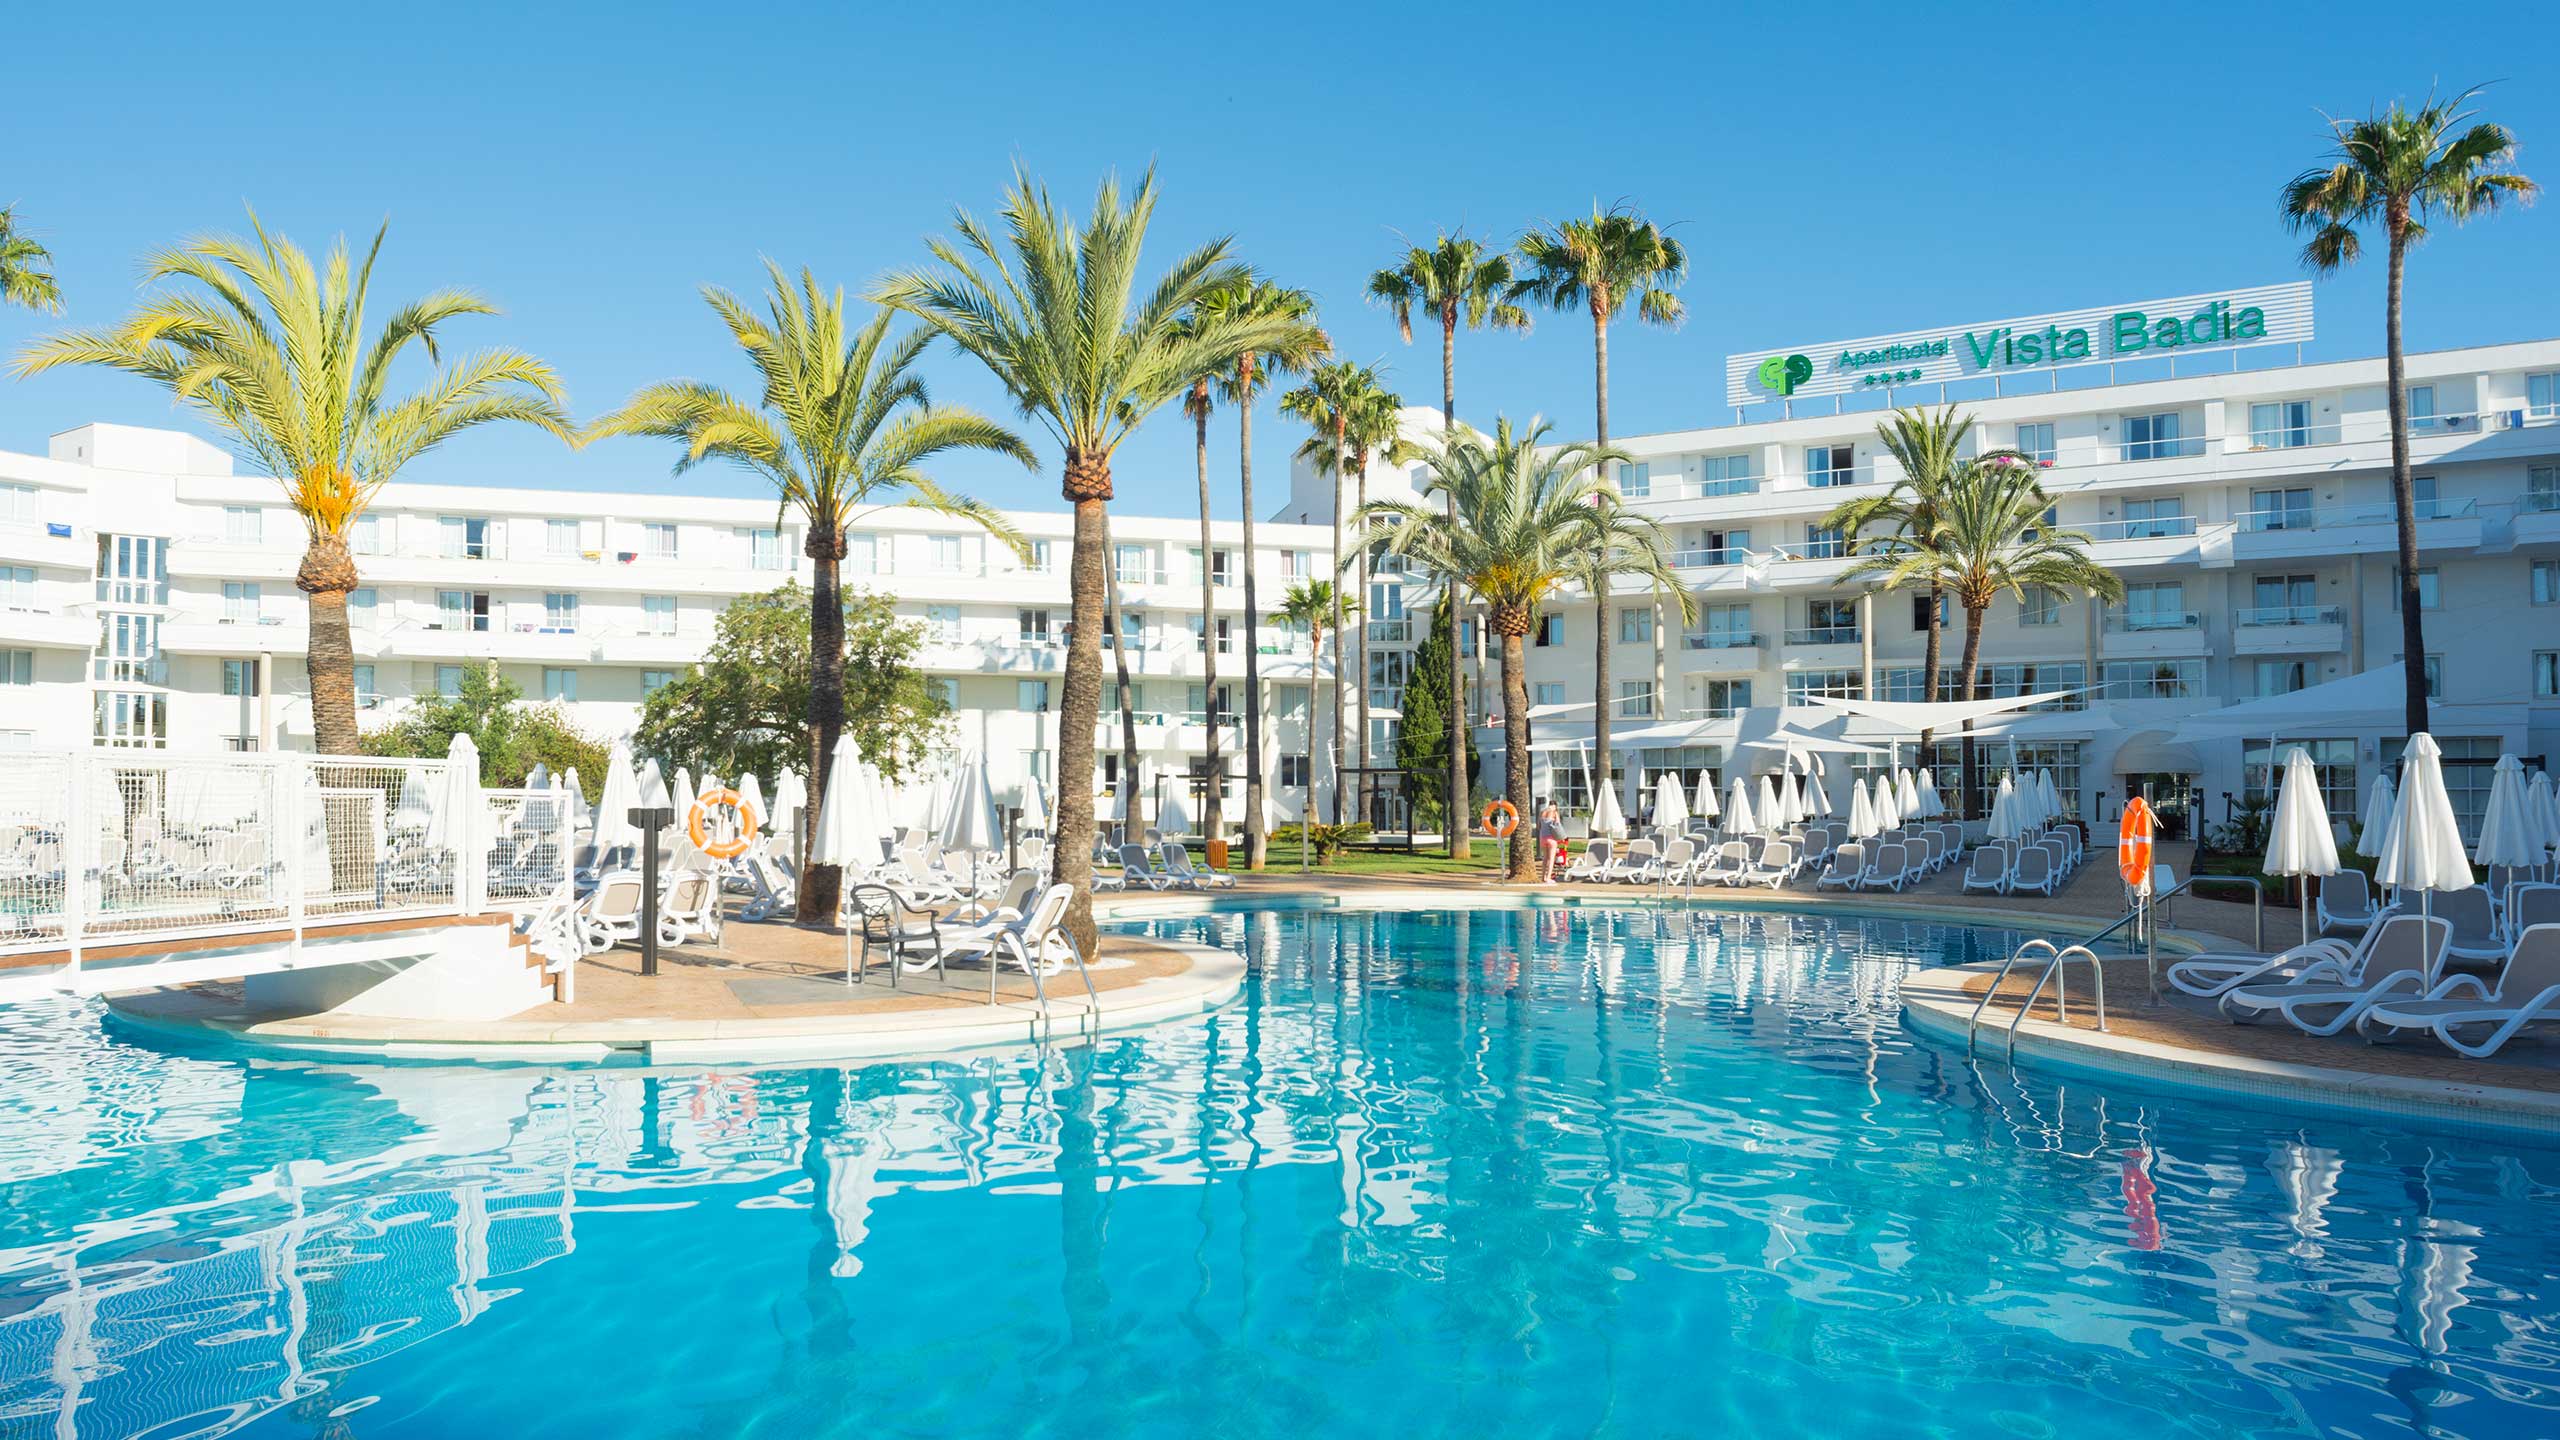 Protur Vista Badia Aparthotel in Sa Coma, Mallorca - Protur Hotels